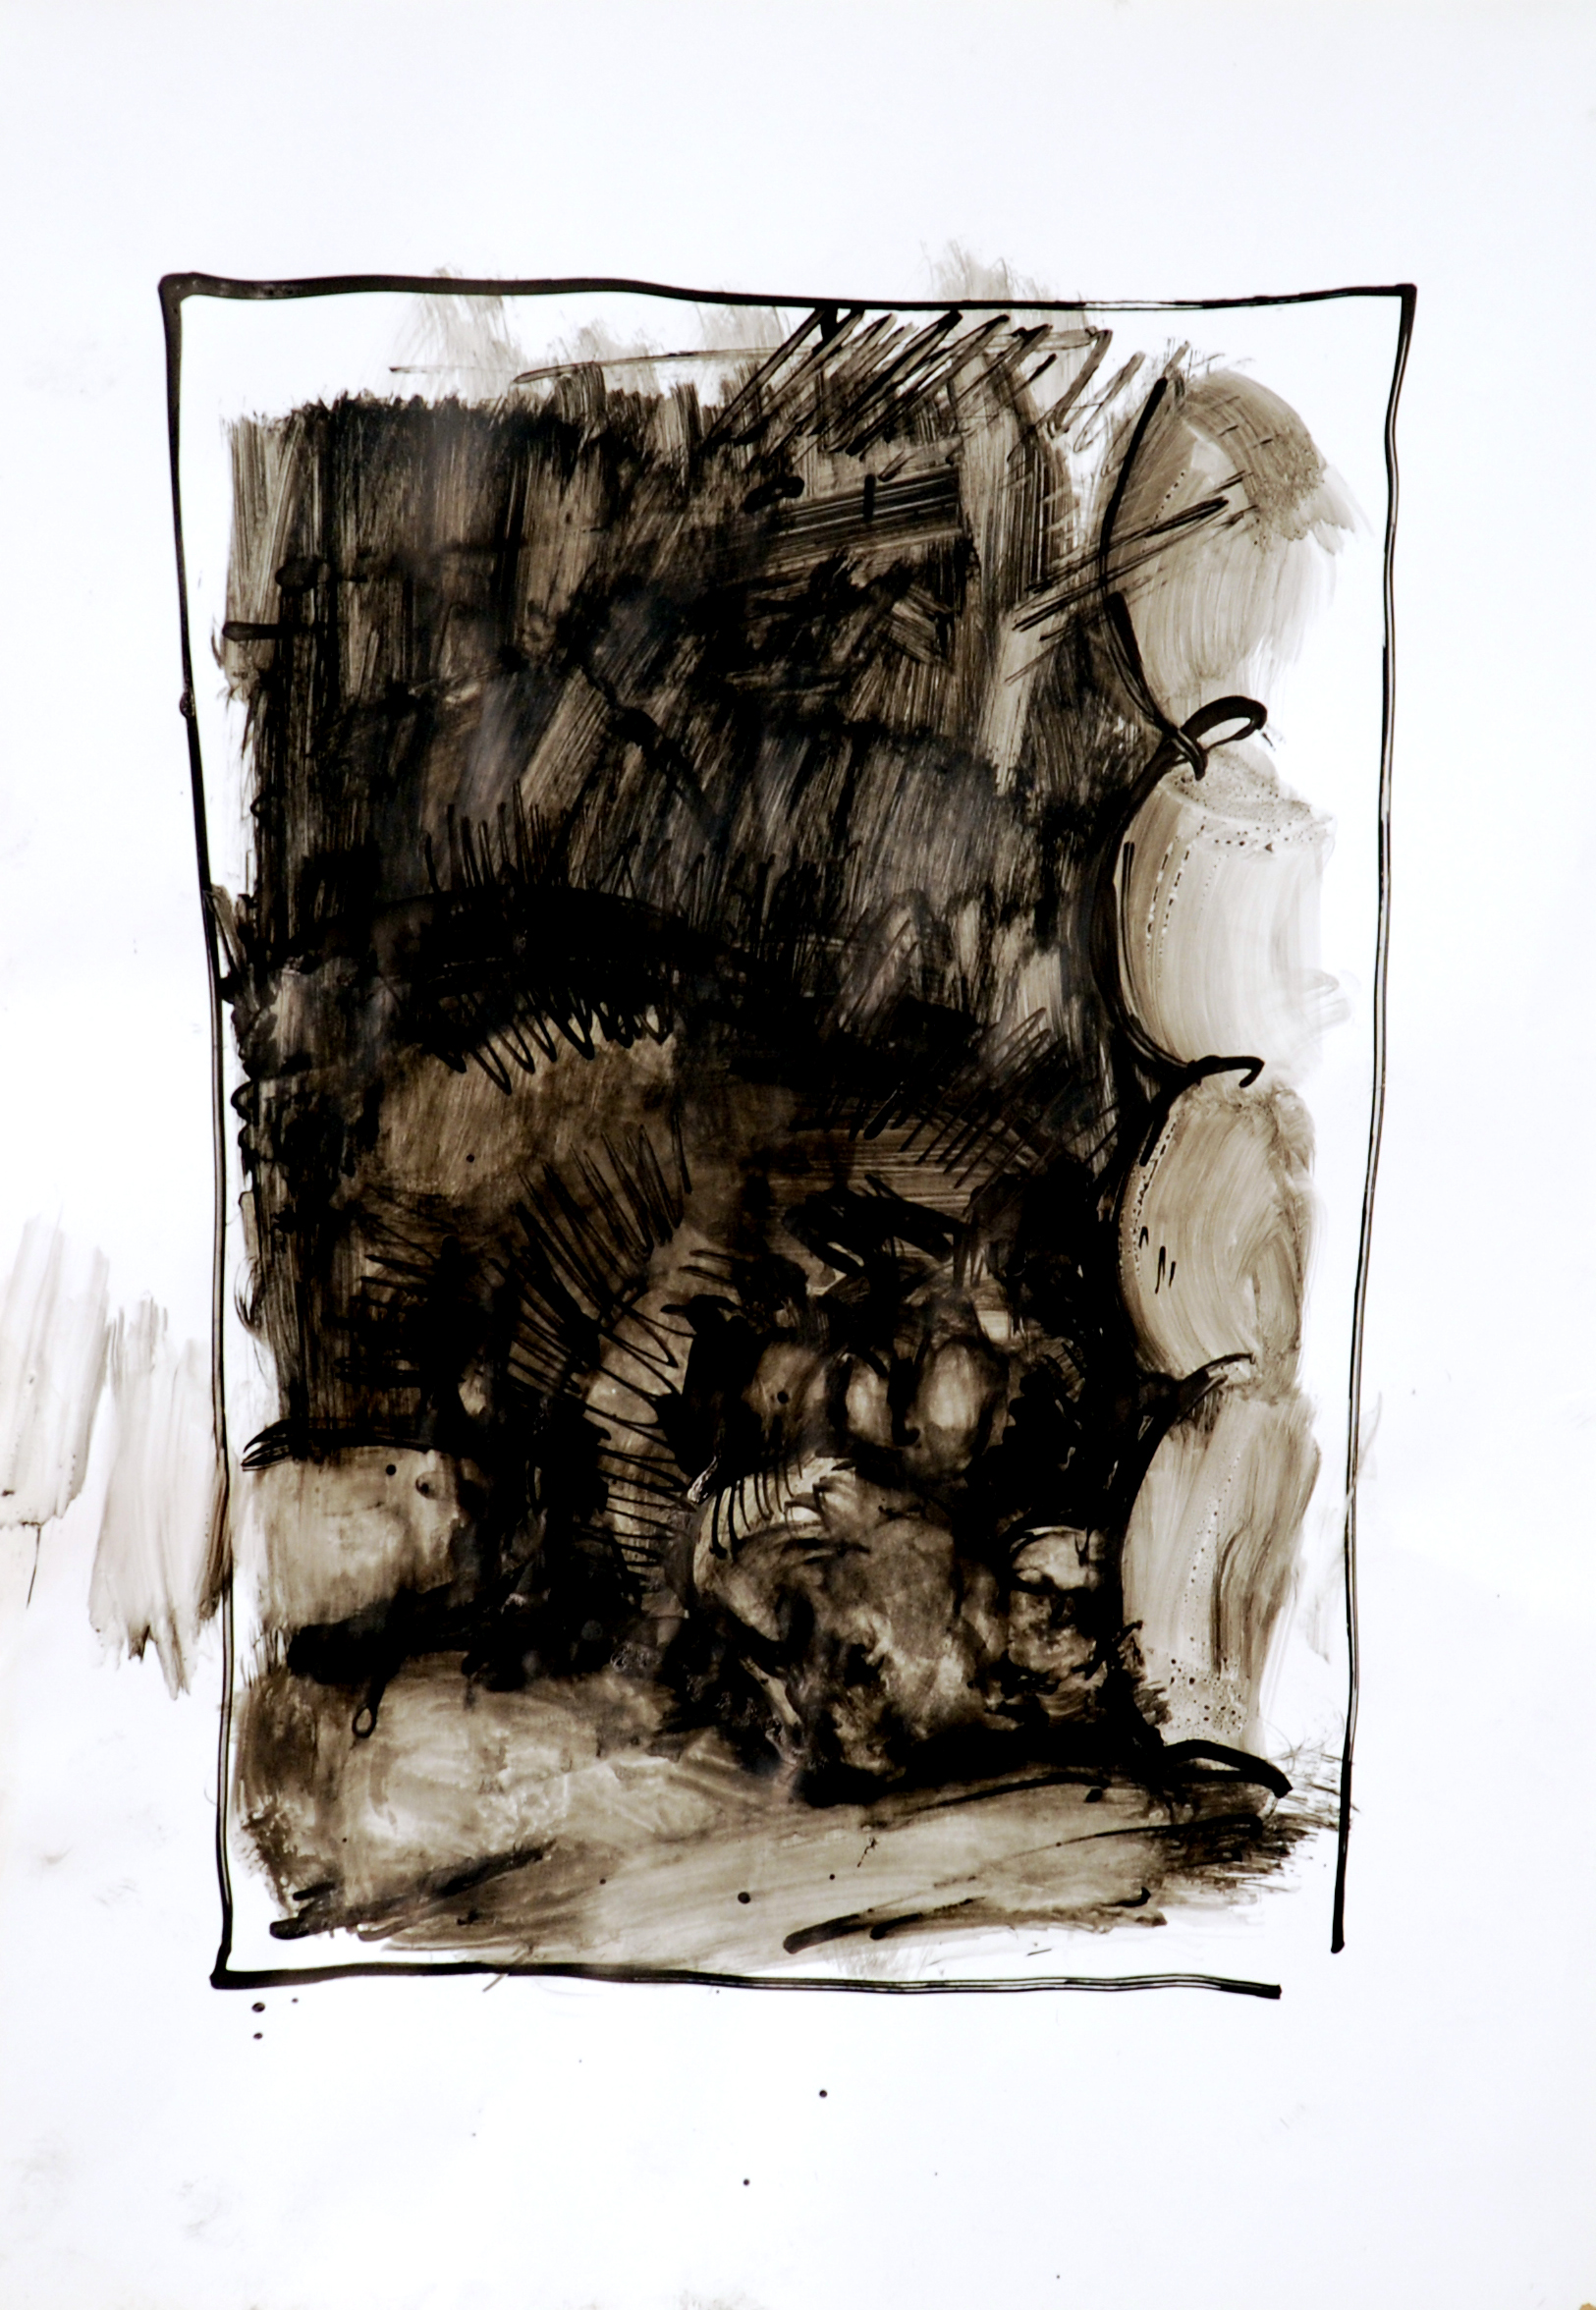 «Лавр в будке», 2011 год, бумага/тушь, 54x35.